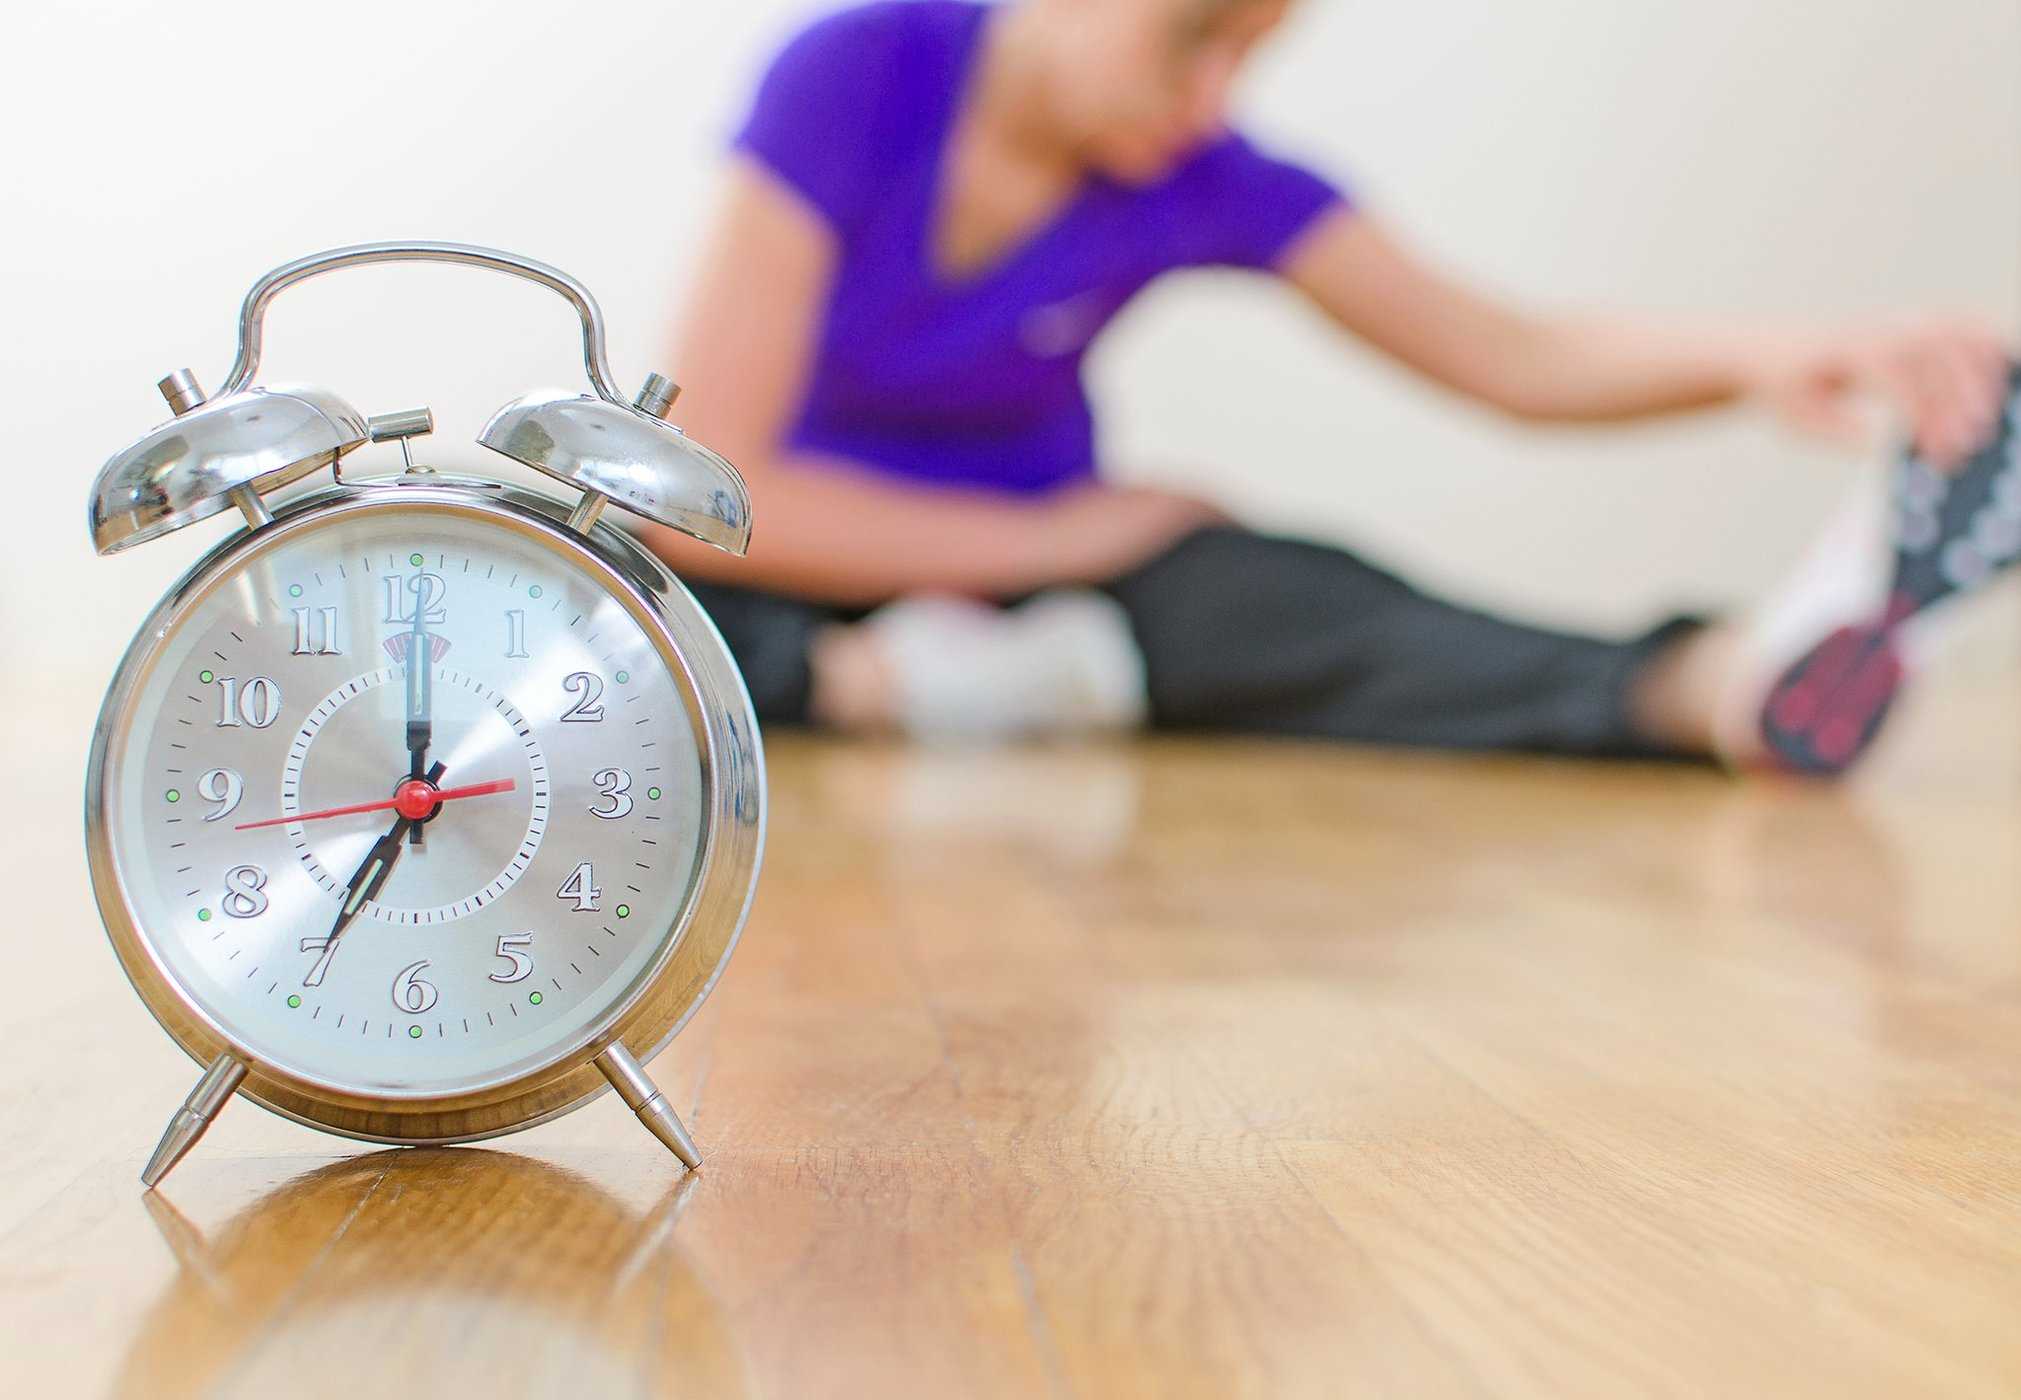 신체에 가장 적합한 운동 시간을 결정하는 방법은 무엇입니까?